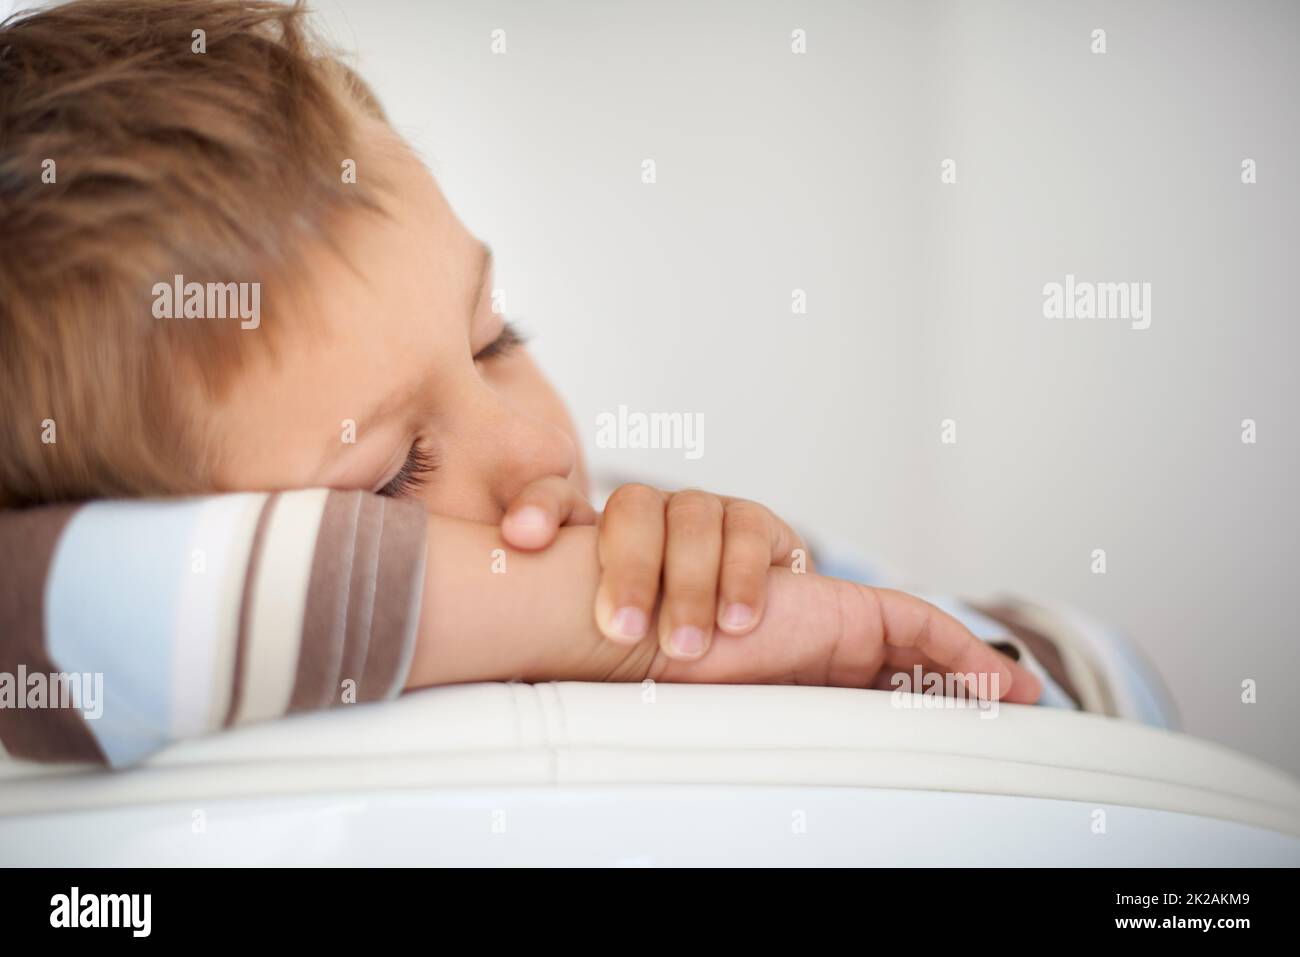 Mittagsschlaf. Eine kurze Aufnahme eines niedlichen kleinen Jungen, der schläft. Stockfoto